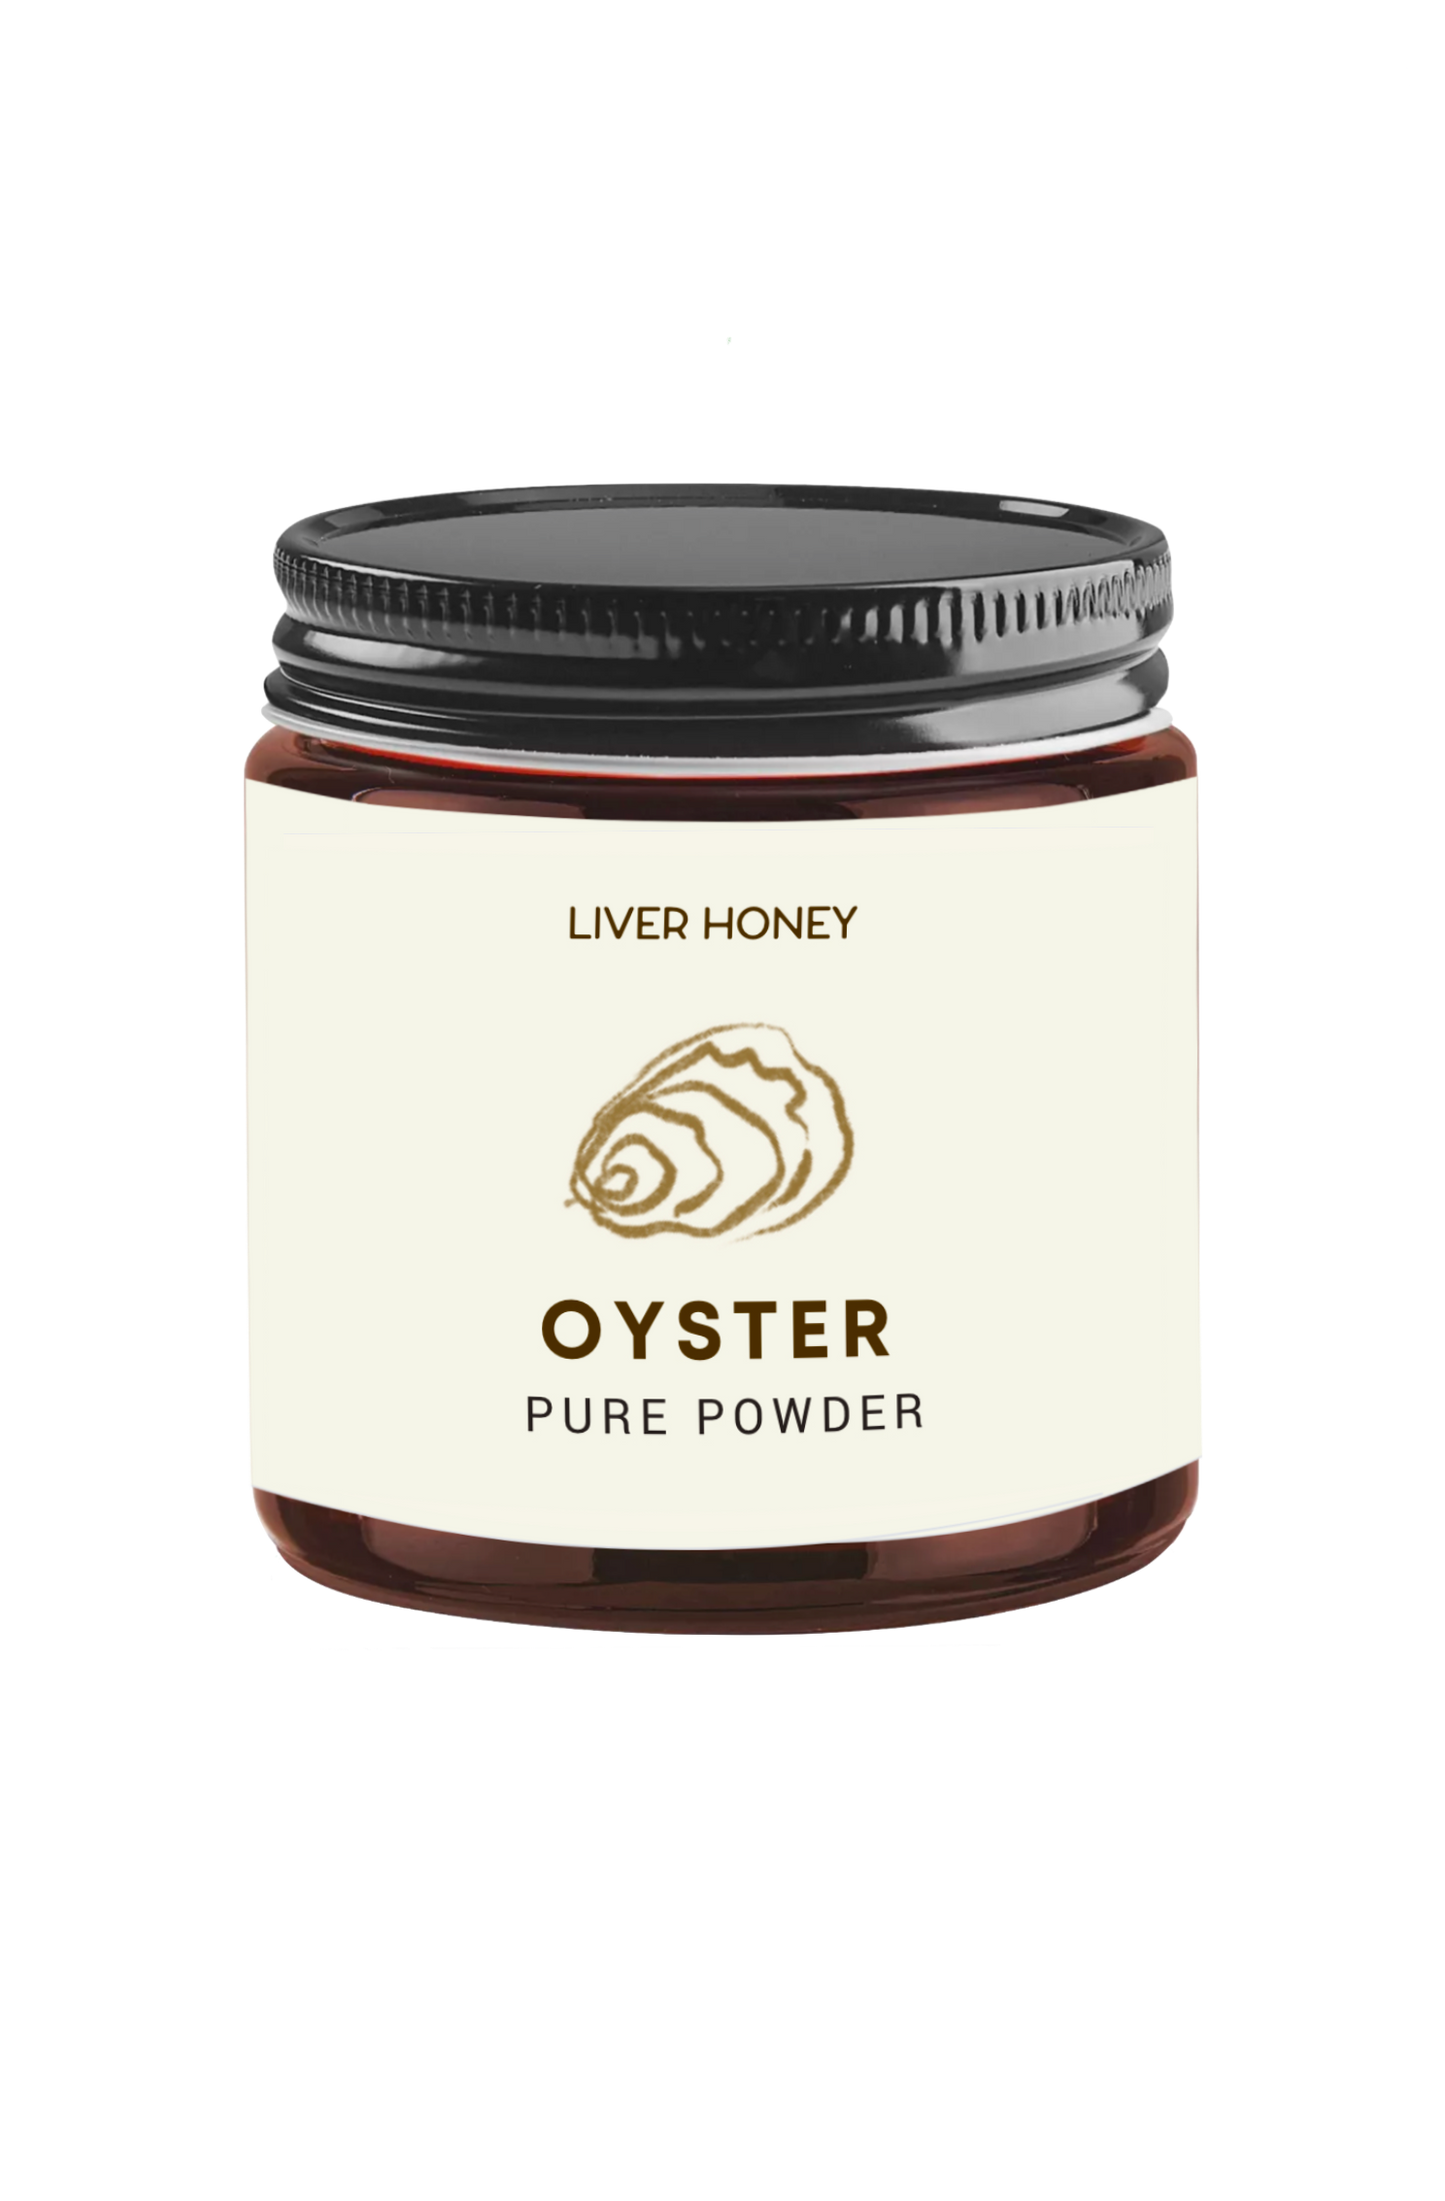 Oyster Powder